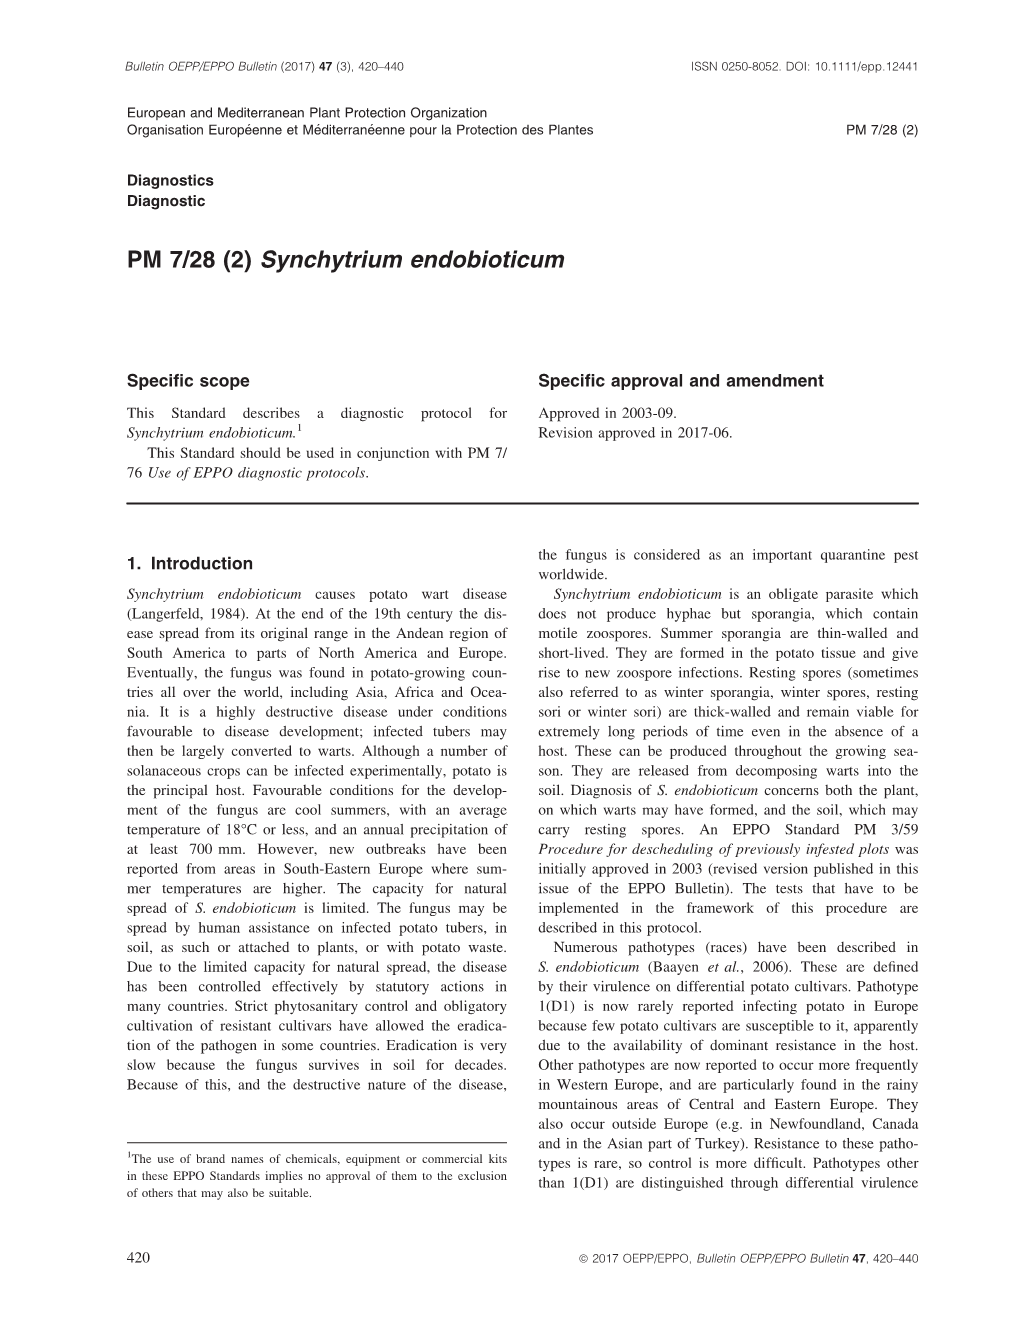 PM 7/28 (2) Synchytrium Endobioticum